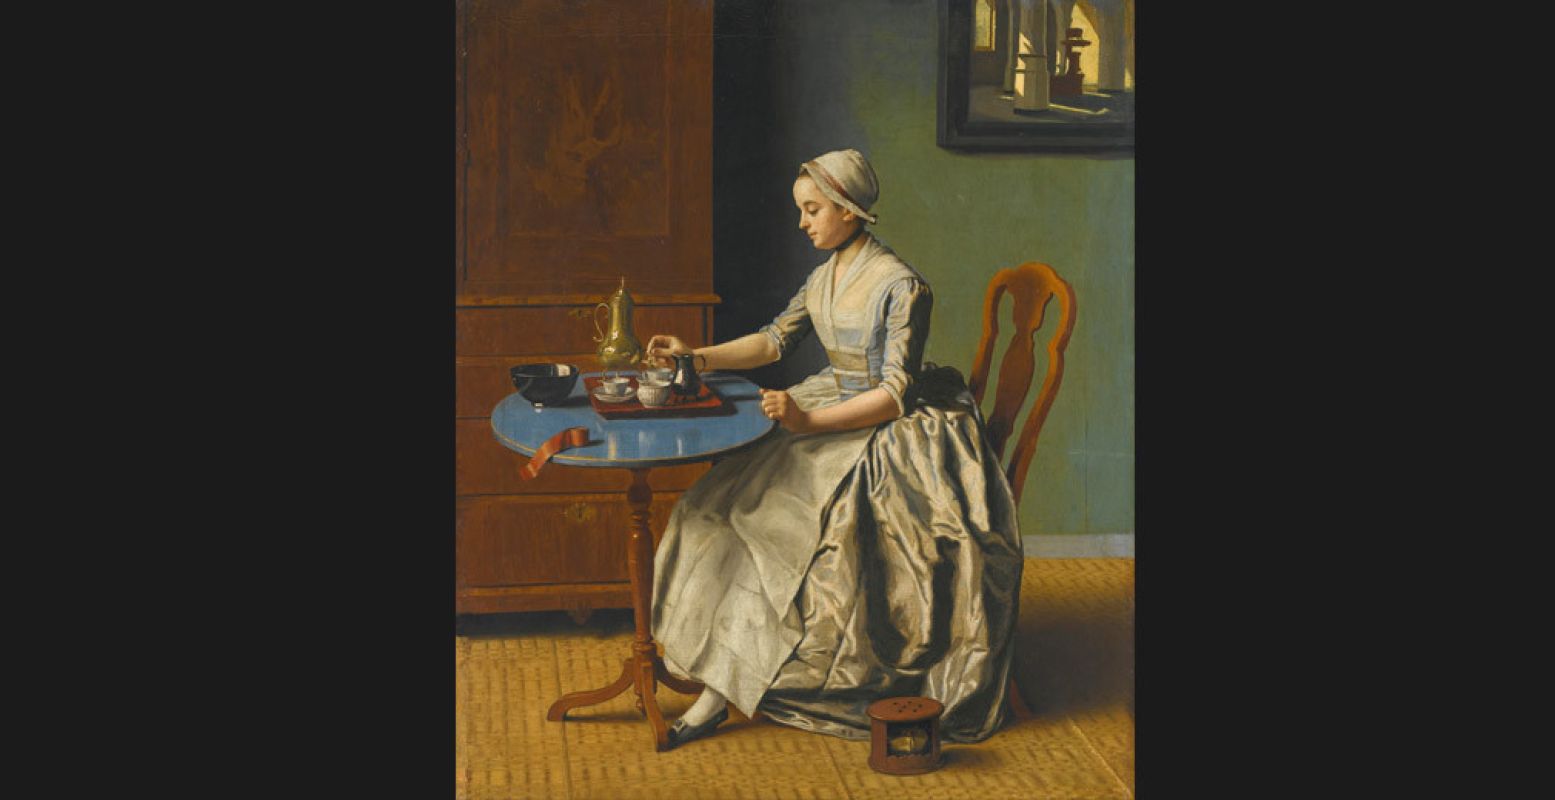 Jean-Etienne Liotard (1702-1789) 'Hollands meisje aan het ontbijt', ca 1756-57. Collectie Rijksmuseum.